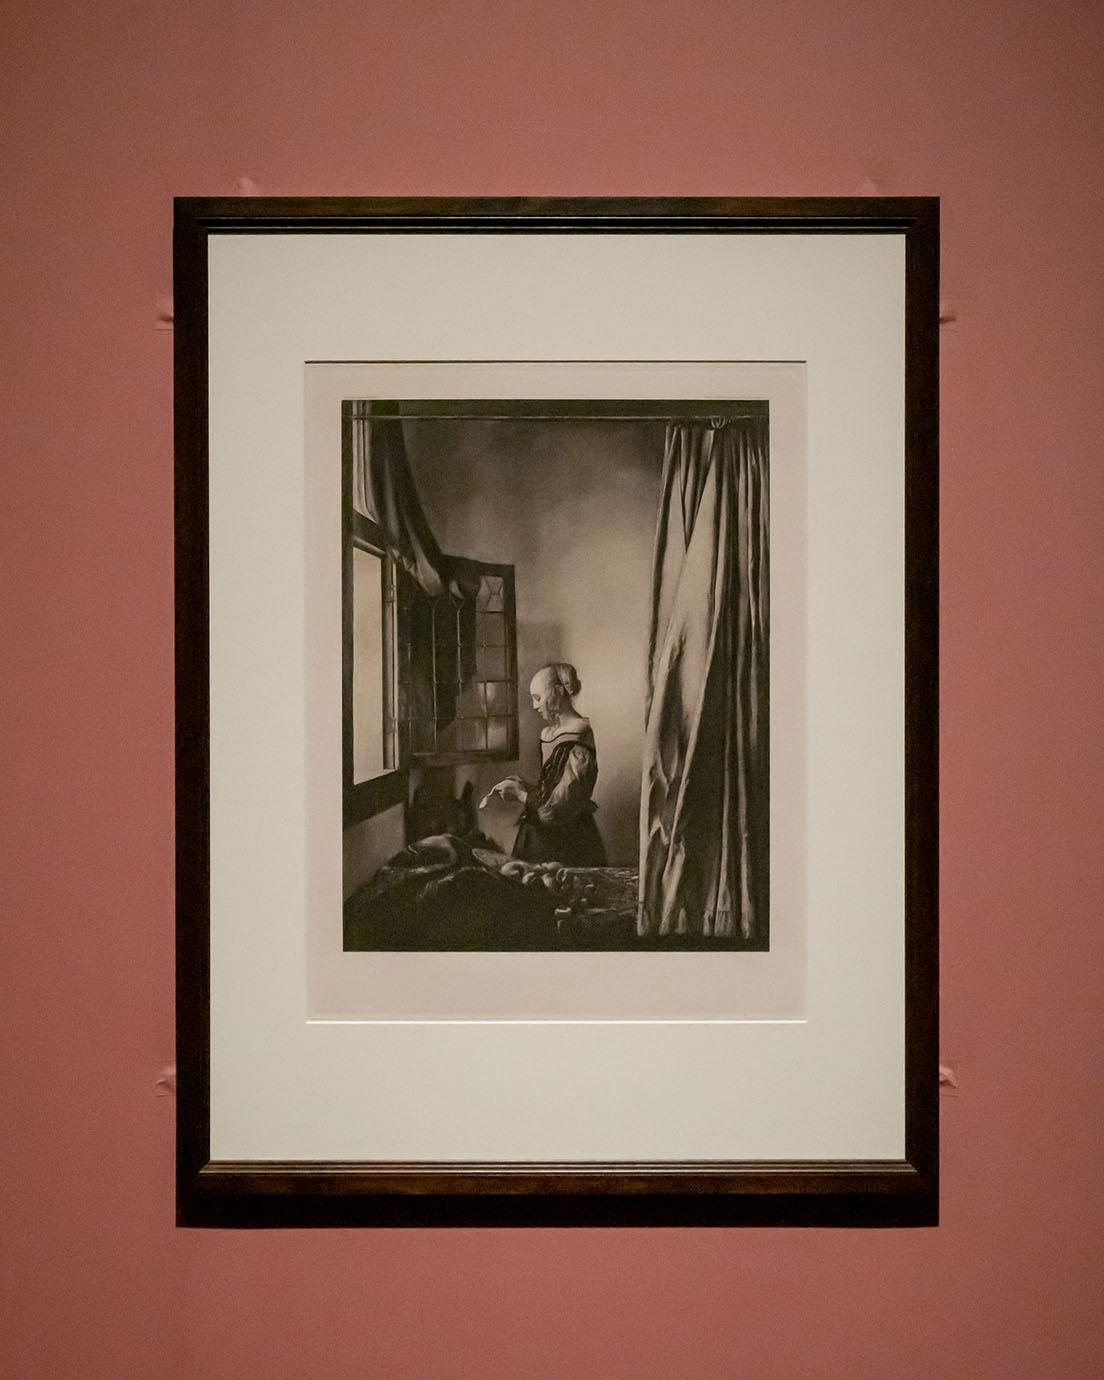 作者不詳《窓辺で手紙を読む女（フェルメールの原画に基づく）》（1907年頃、ドレスデン美術大学）。版画と写真を組み合わせたフォトグラヴュールという手法によるもの。画面のひび割れまで再現されている。
